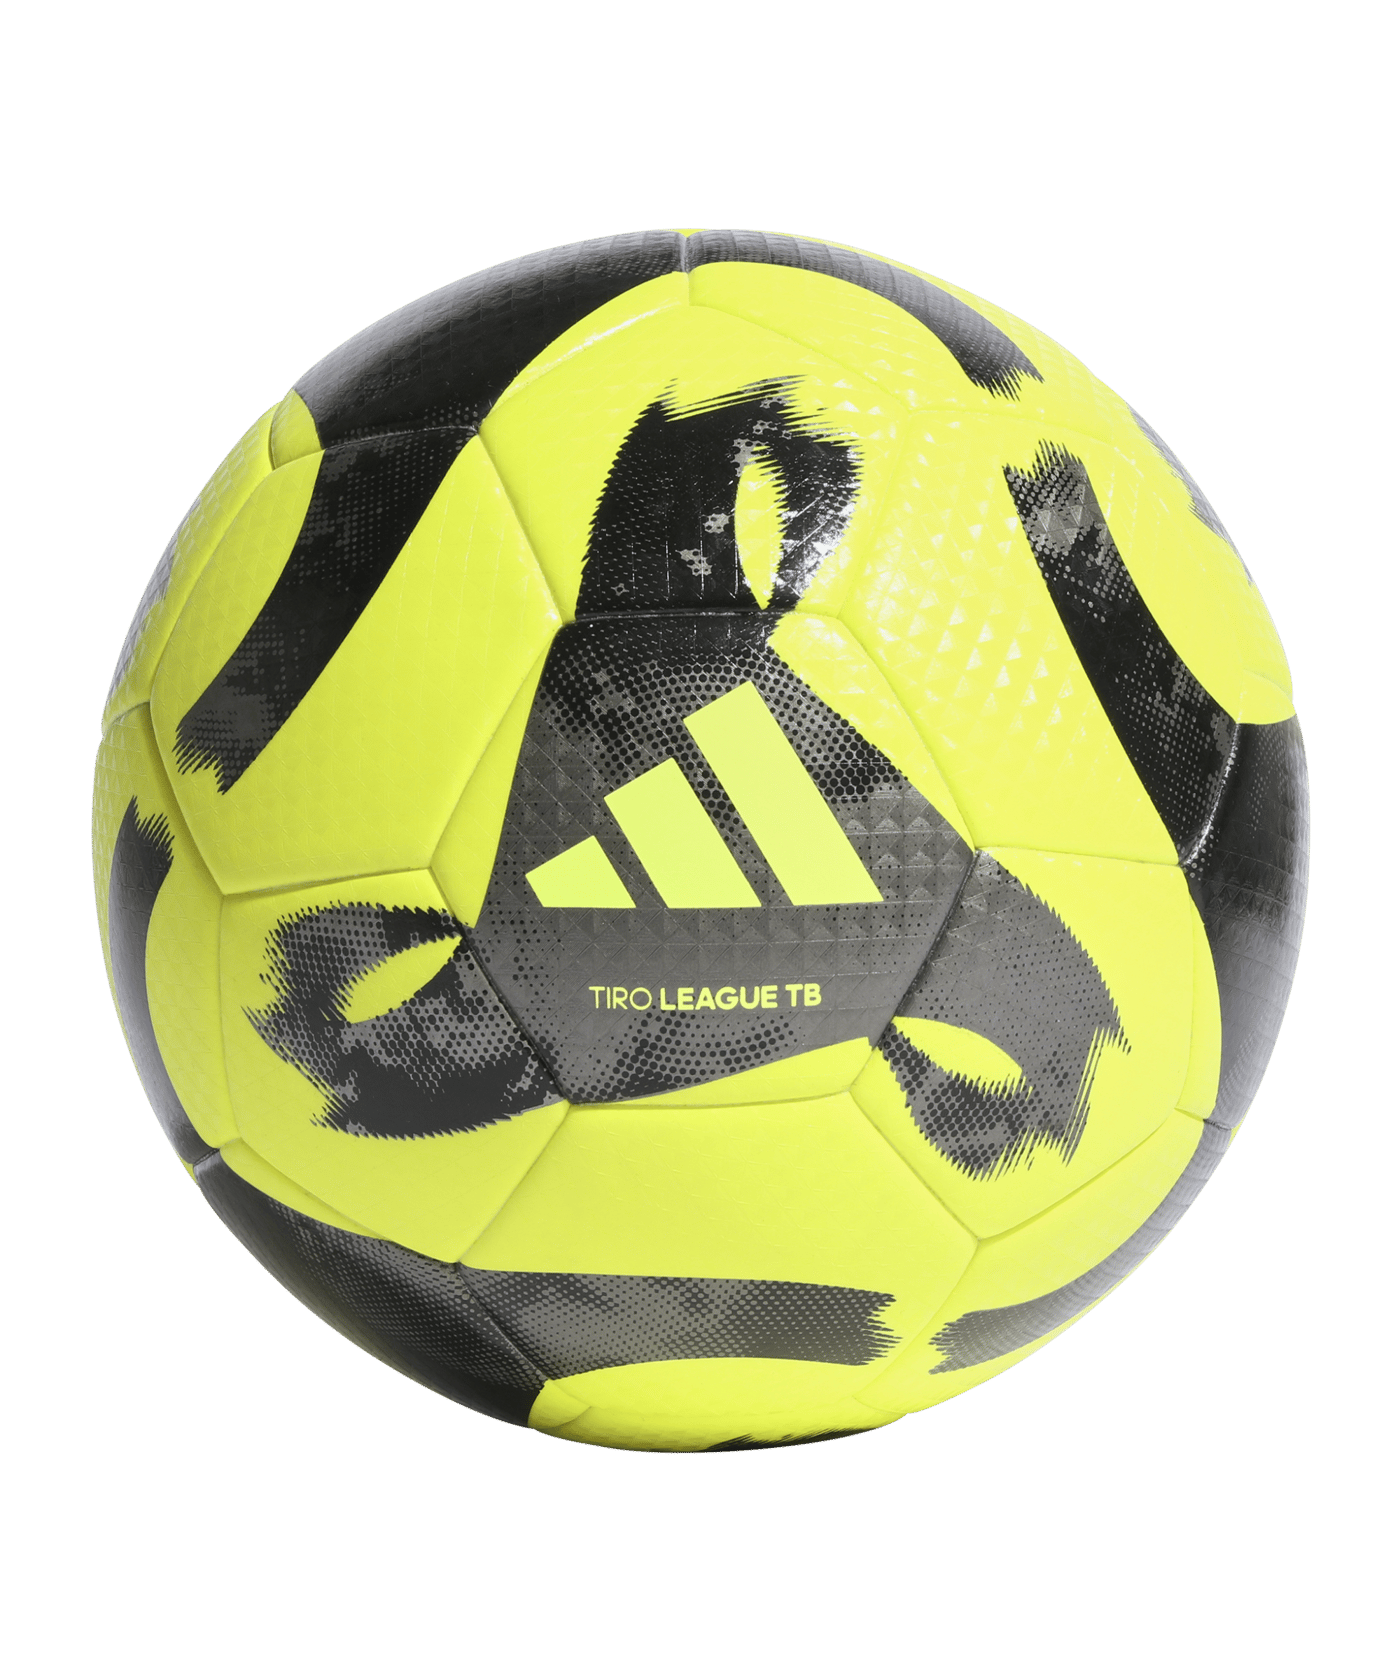 Adidas Tiro League TB Trainingsball Gelb Schwarz